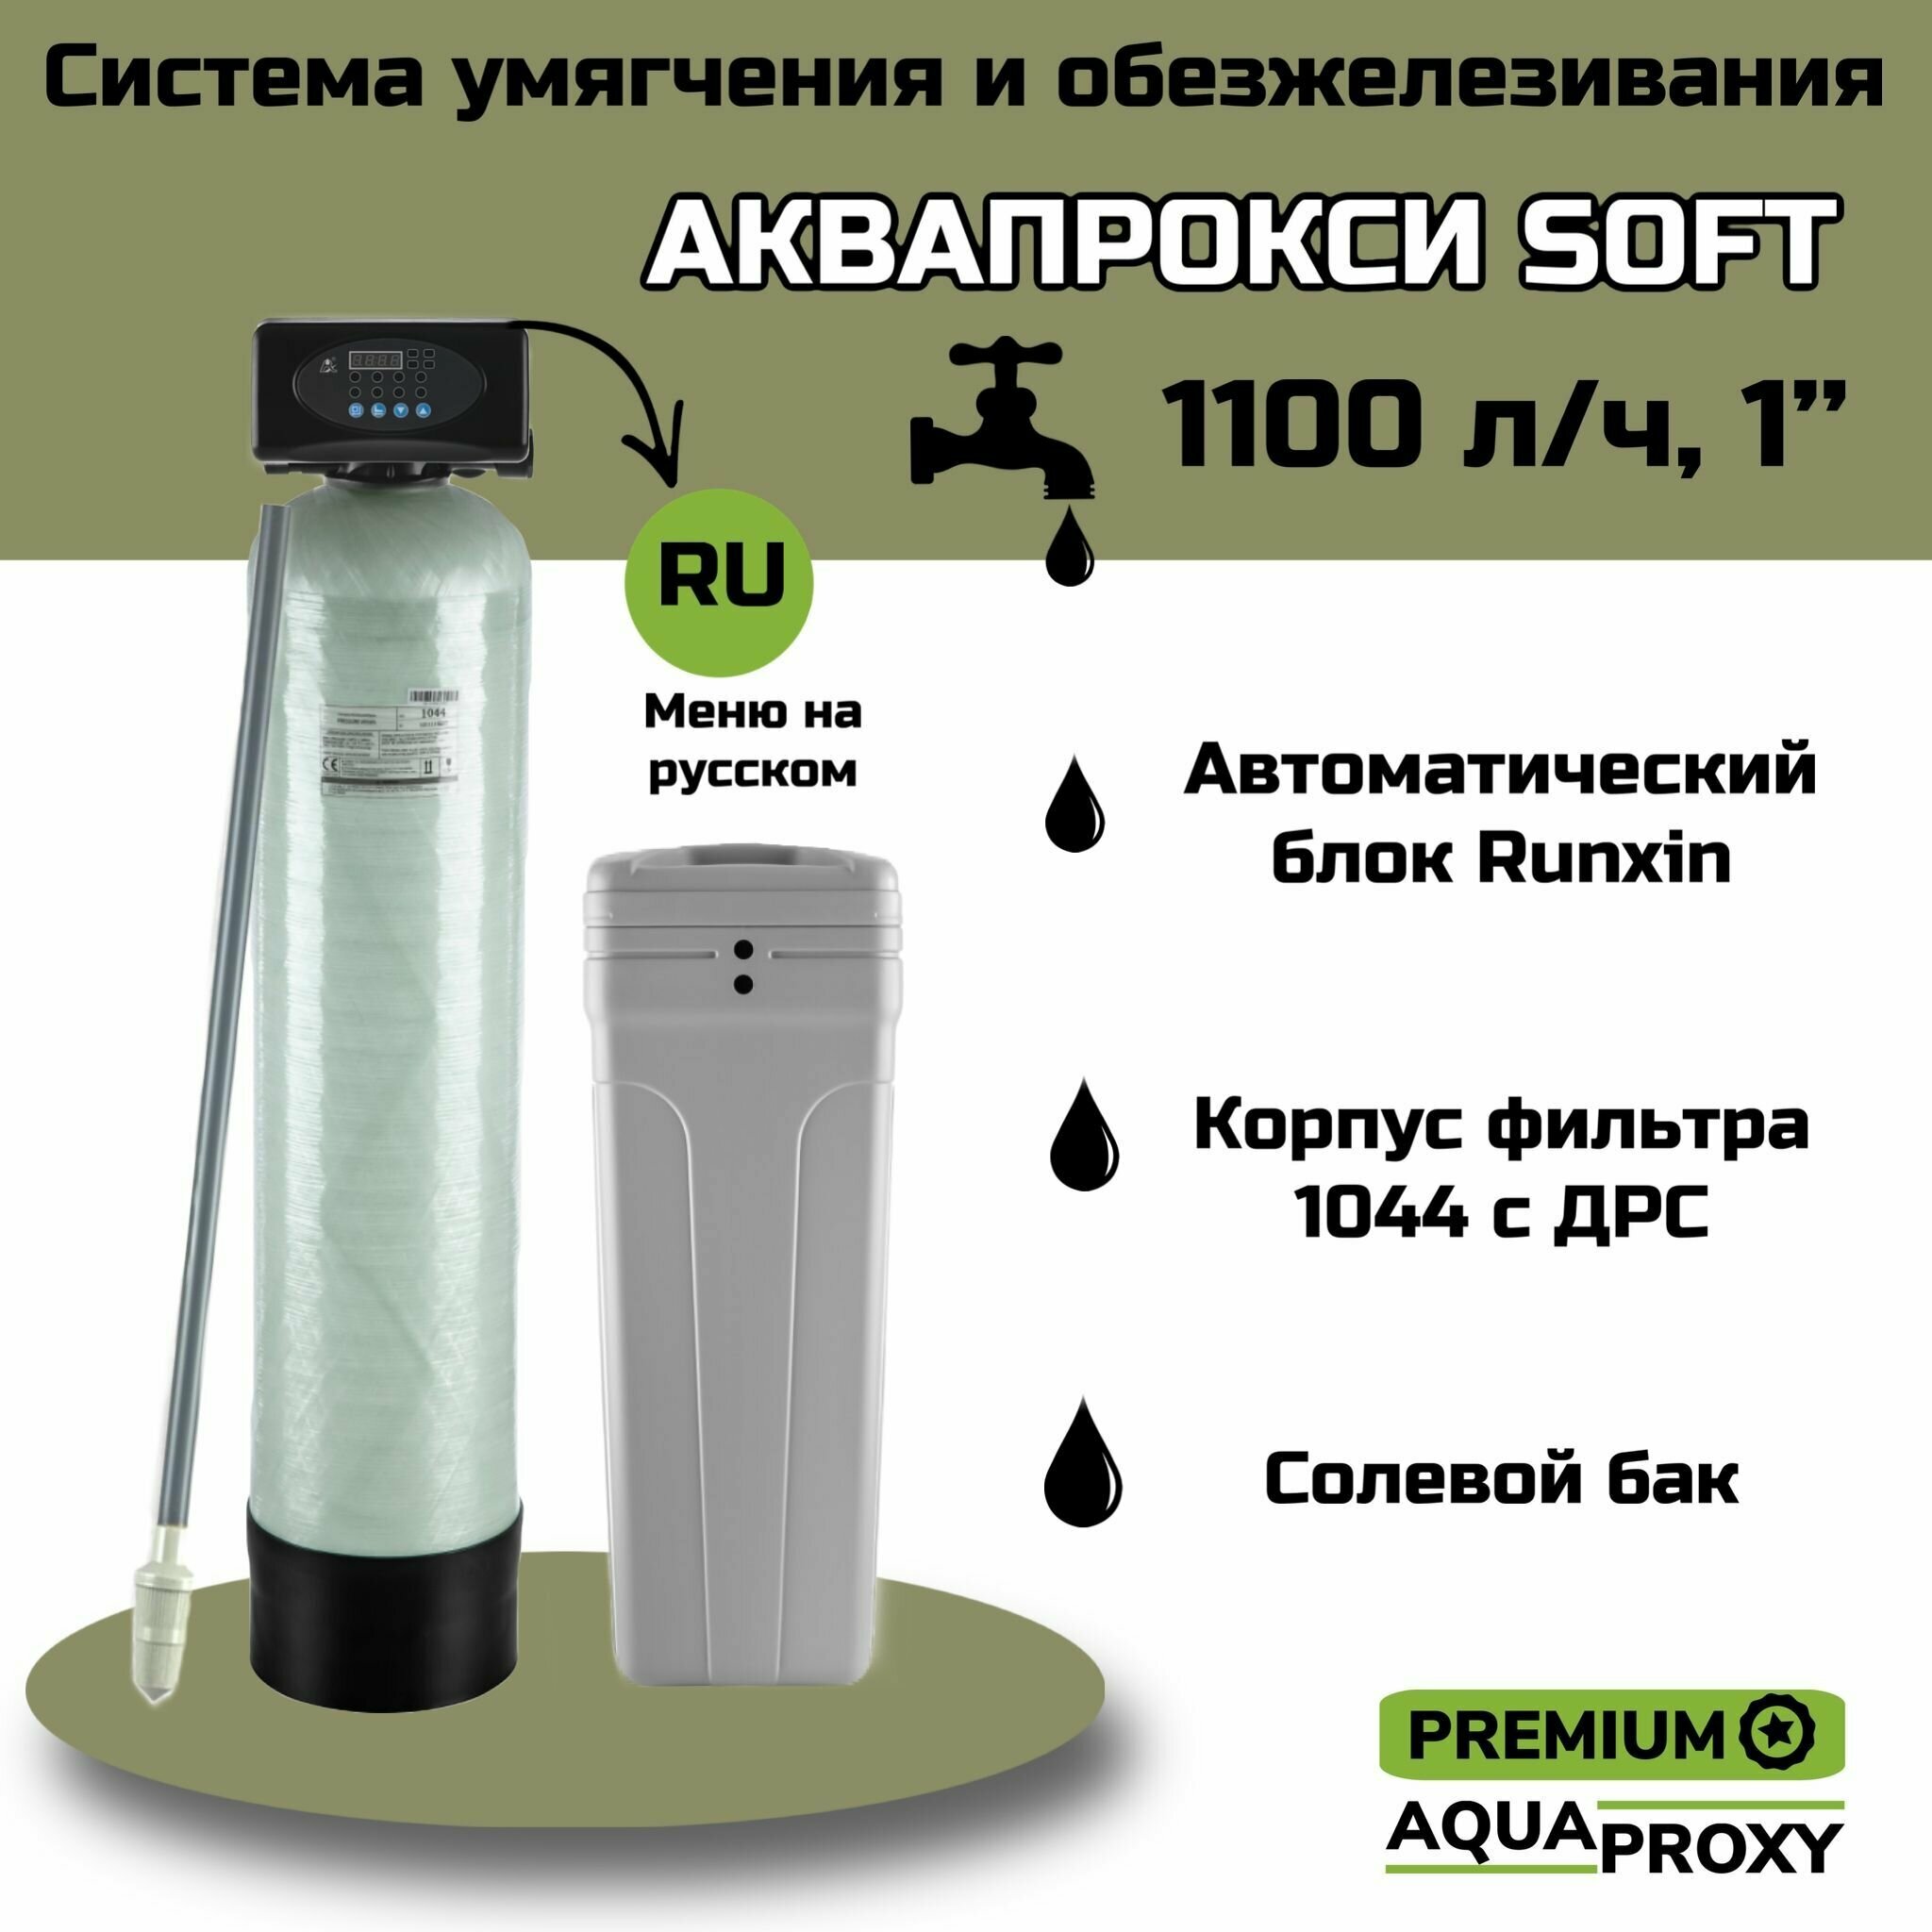 Автоматический фильтр умягчения обезжелезивания воды AquaProxy 1044 система очистки воды из скважины для дачи и дома и предприятий (1500 л/ч 1")